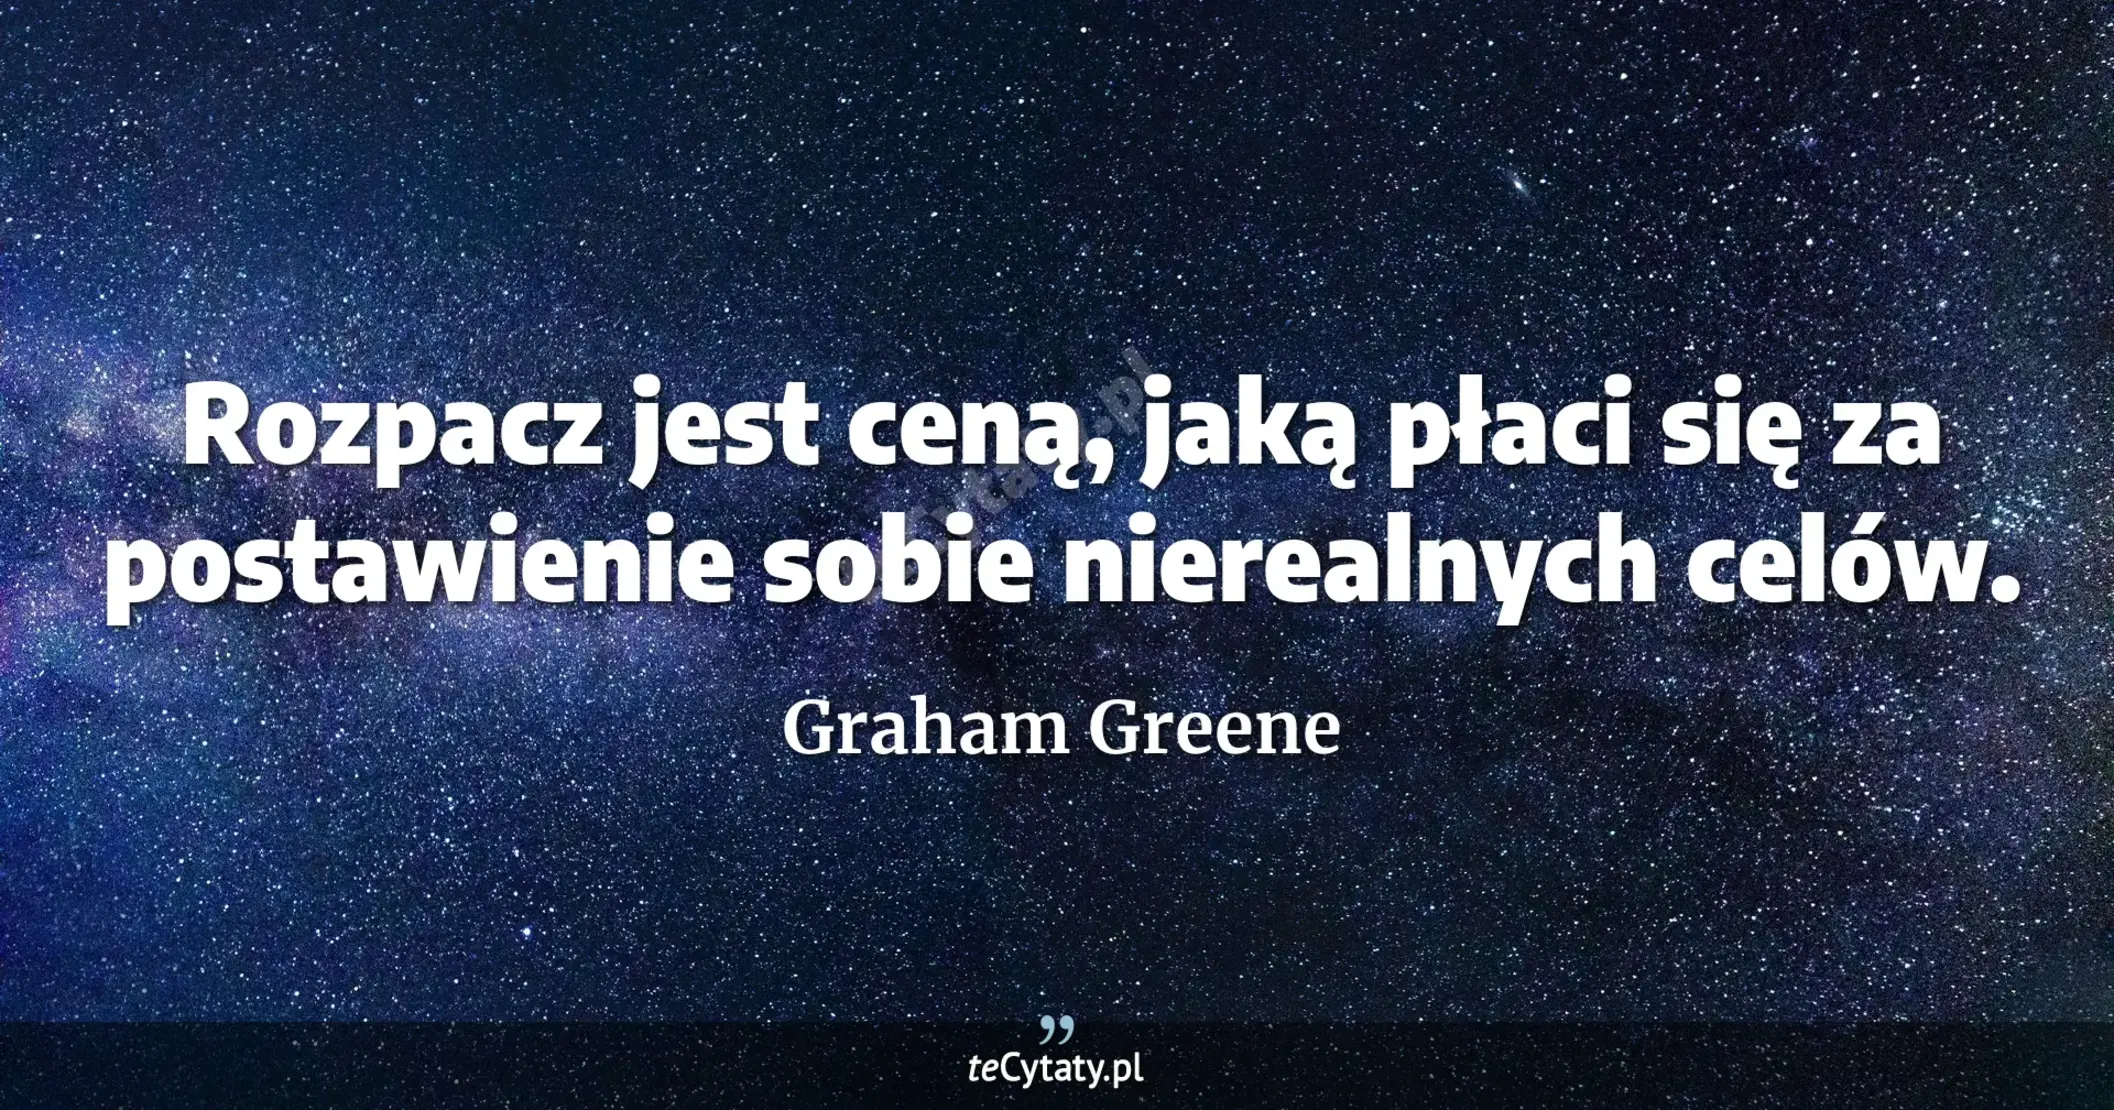 Rozpacz jest ceną, jaką płaci się za postawienie sobie nierealnych celów. - Graham Greene